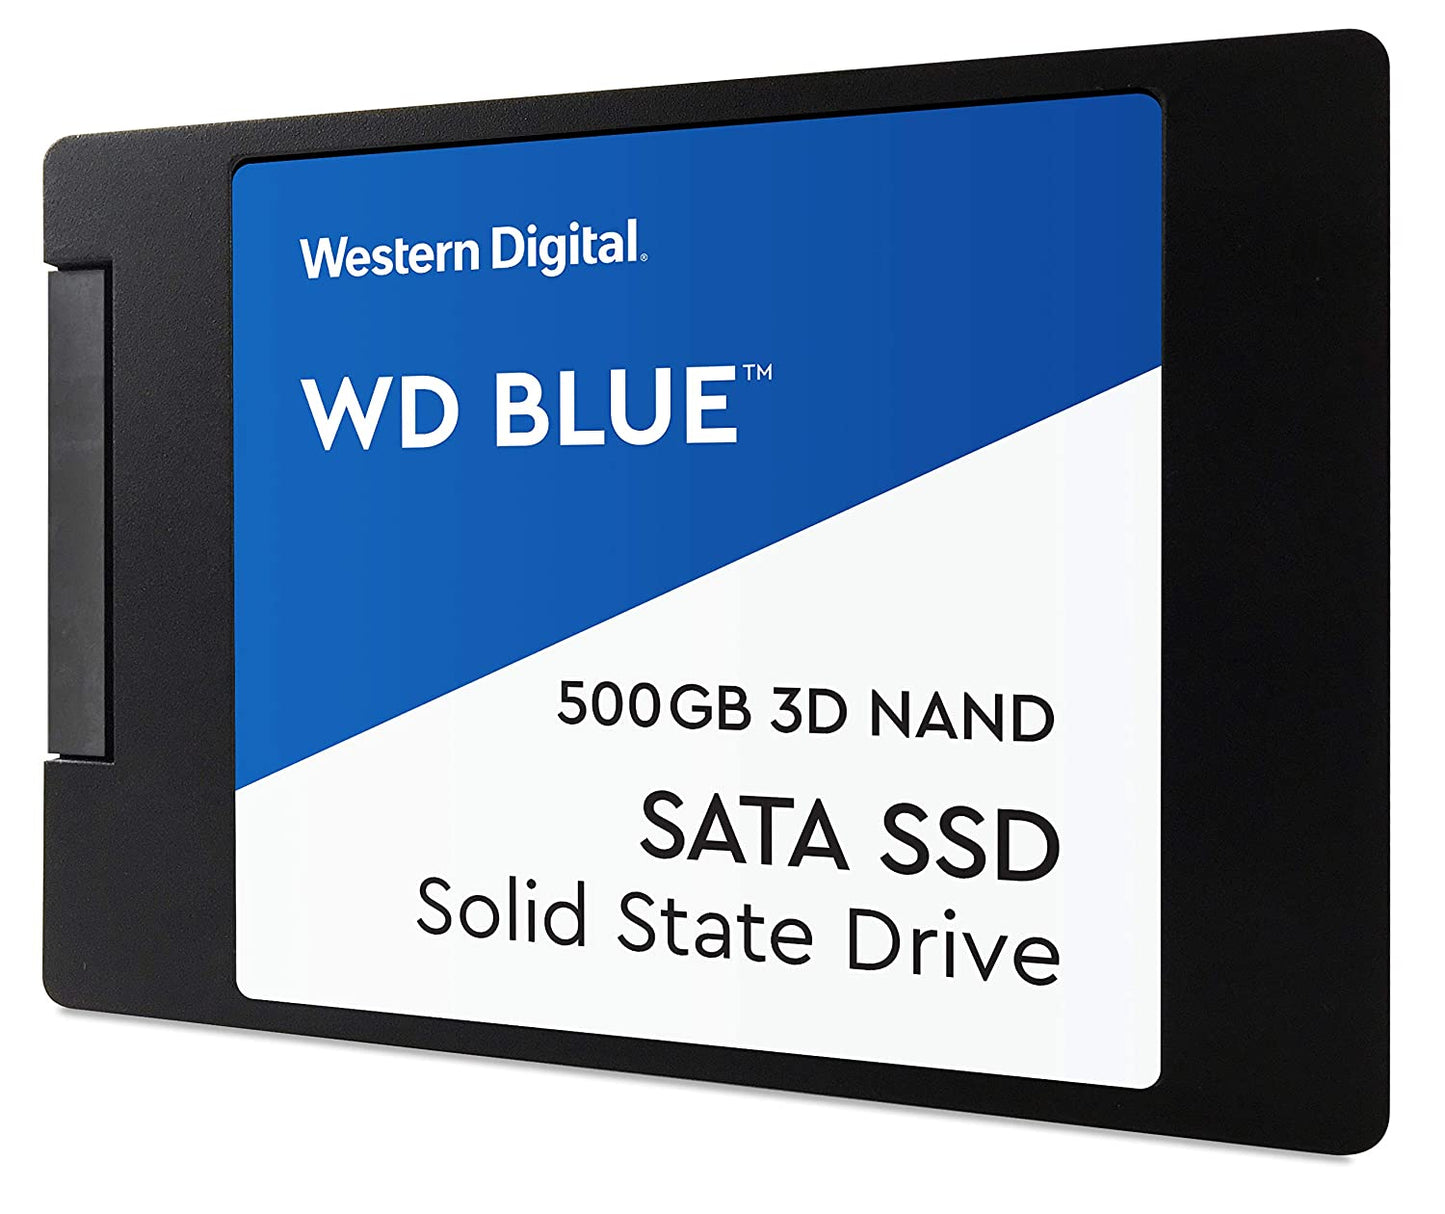 SSD-500-GB-WD-BLUE-SATA-84717090